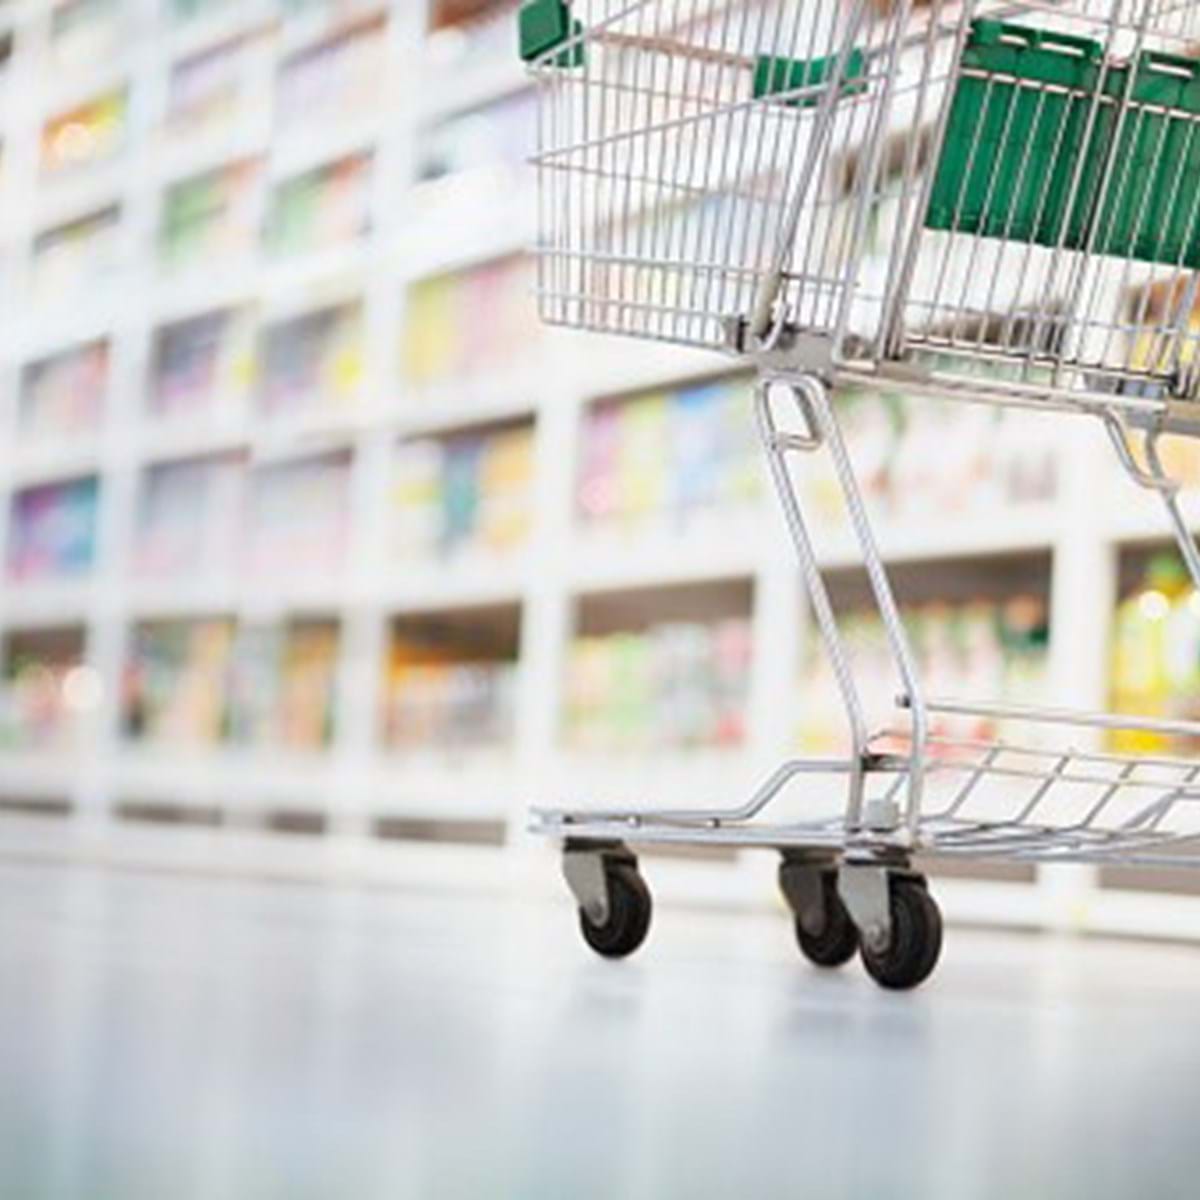 Auchan está a avaliar acabar com a marca Jumbo - Comércio - Jornal